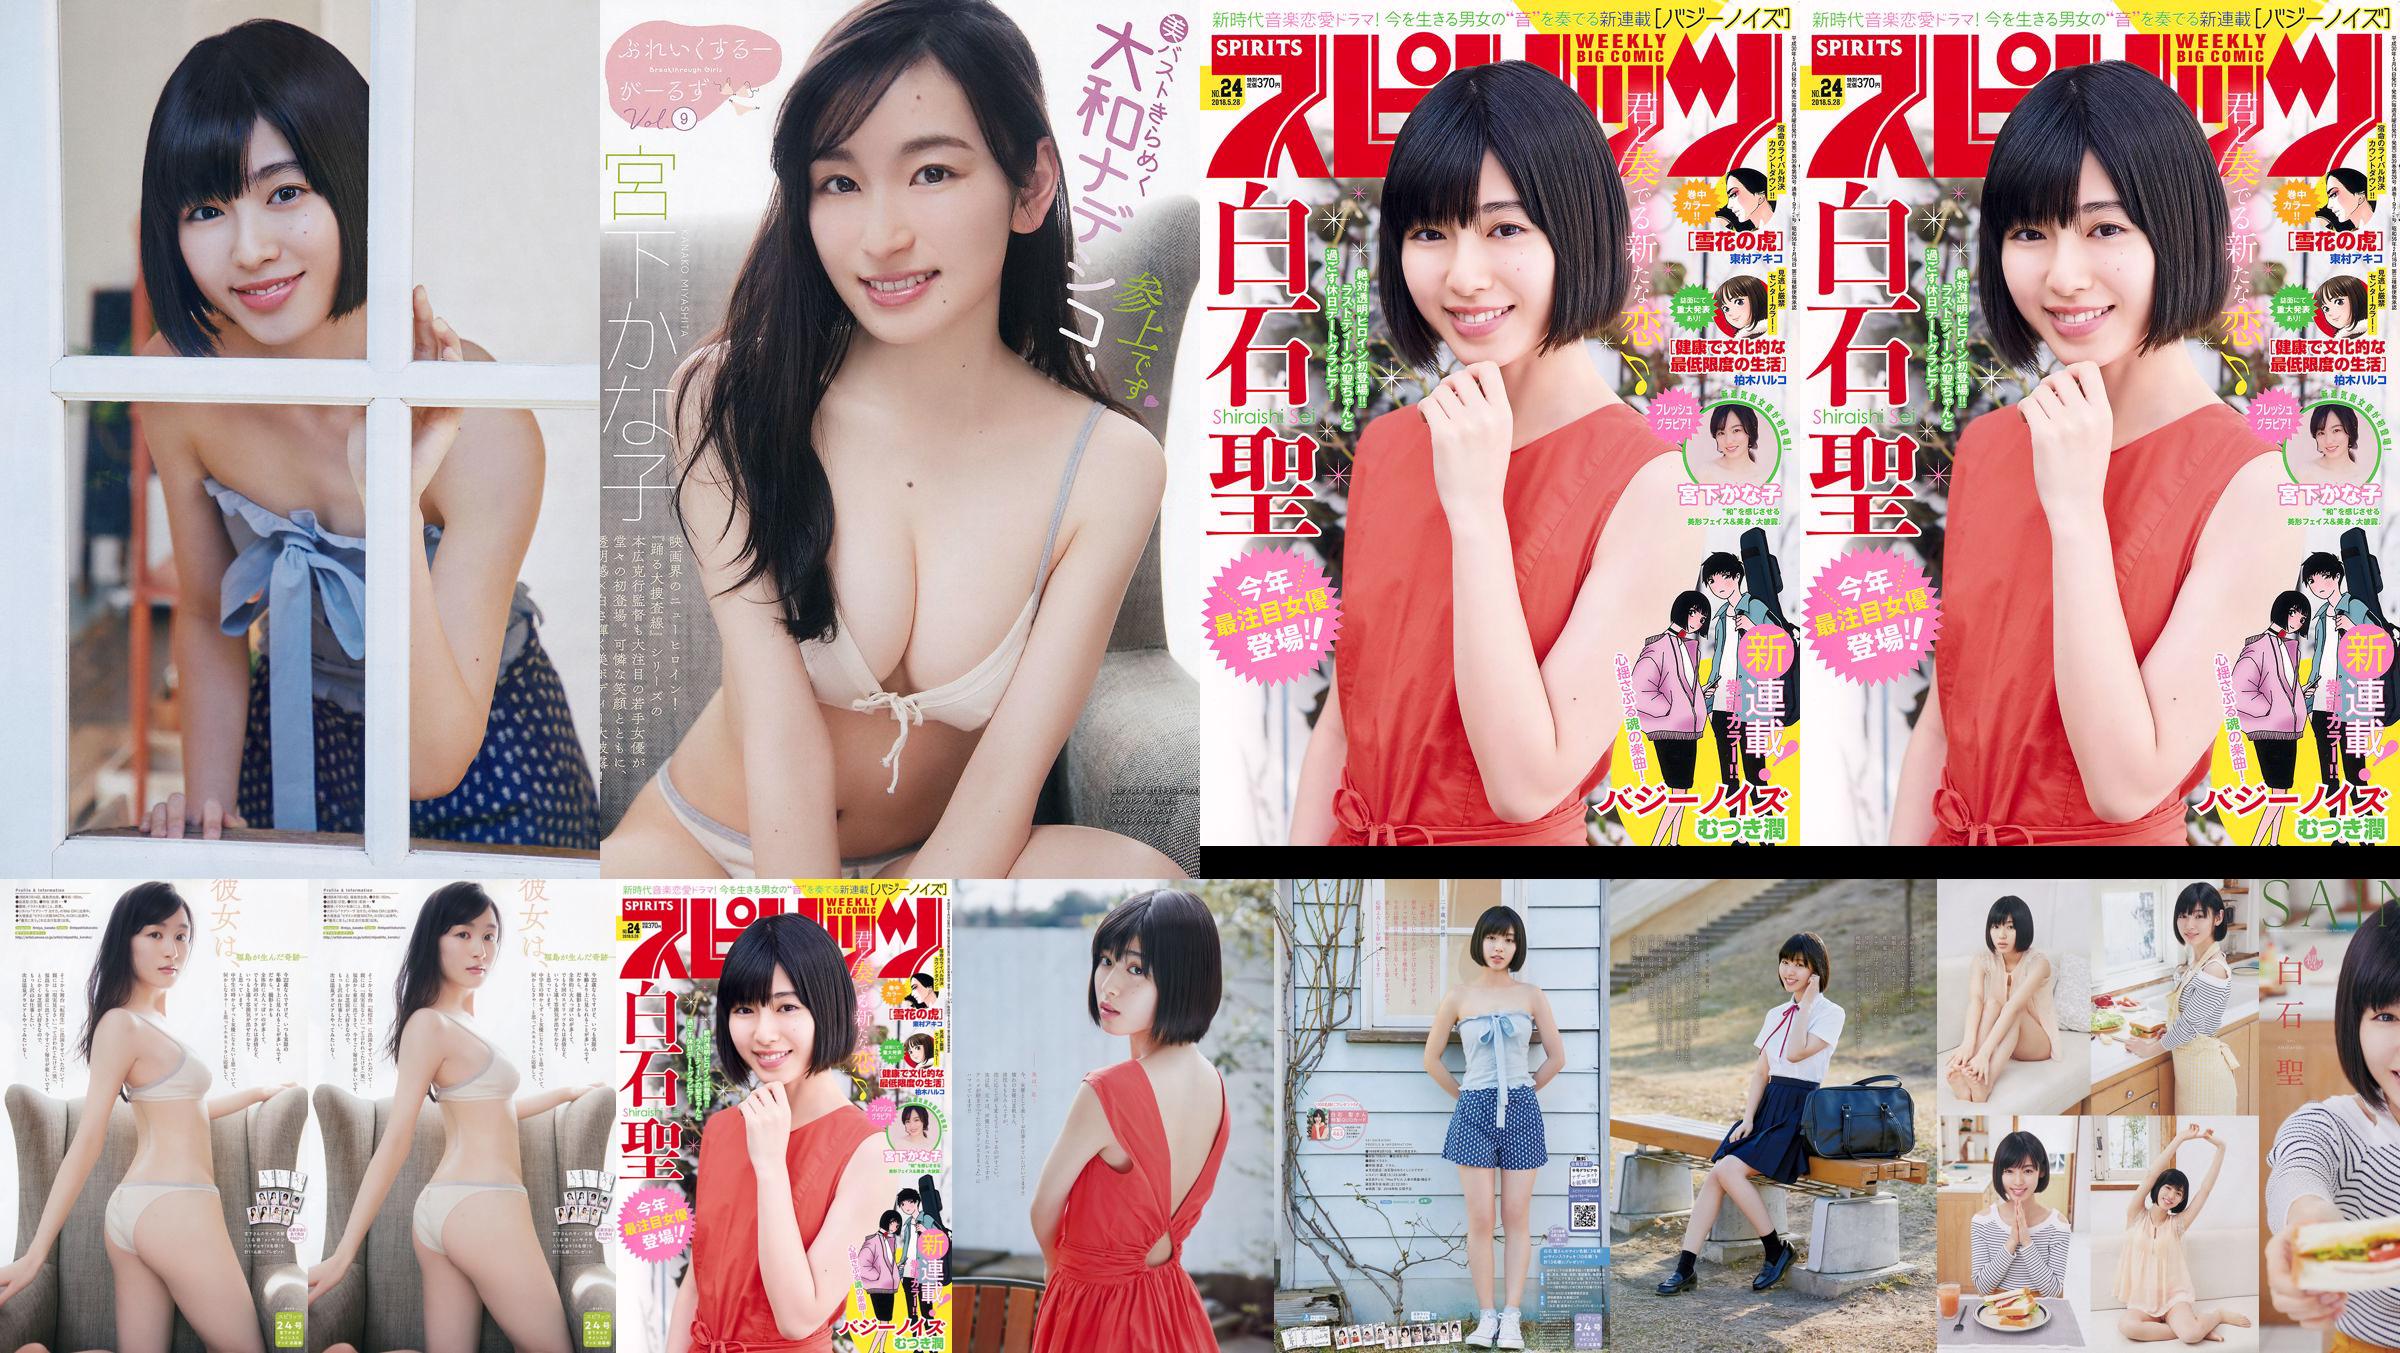 Юрия Кизаки Нана Окада AKB48 Under Girls [Weekly Young Jump] 2015 № 36-37 Фото No.e050ef Страница 1